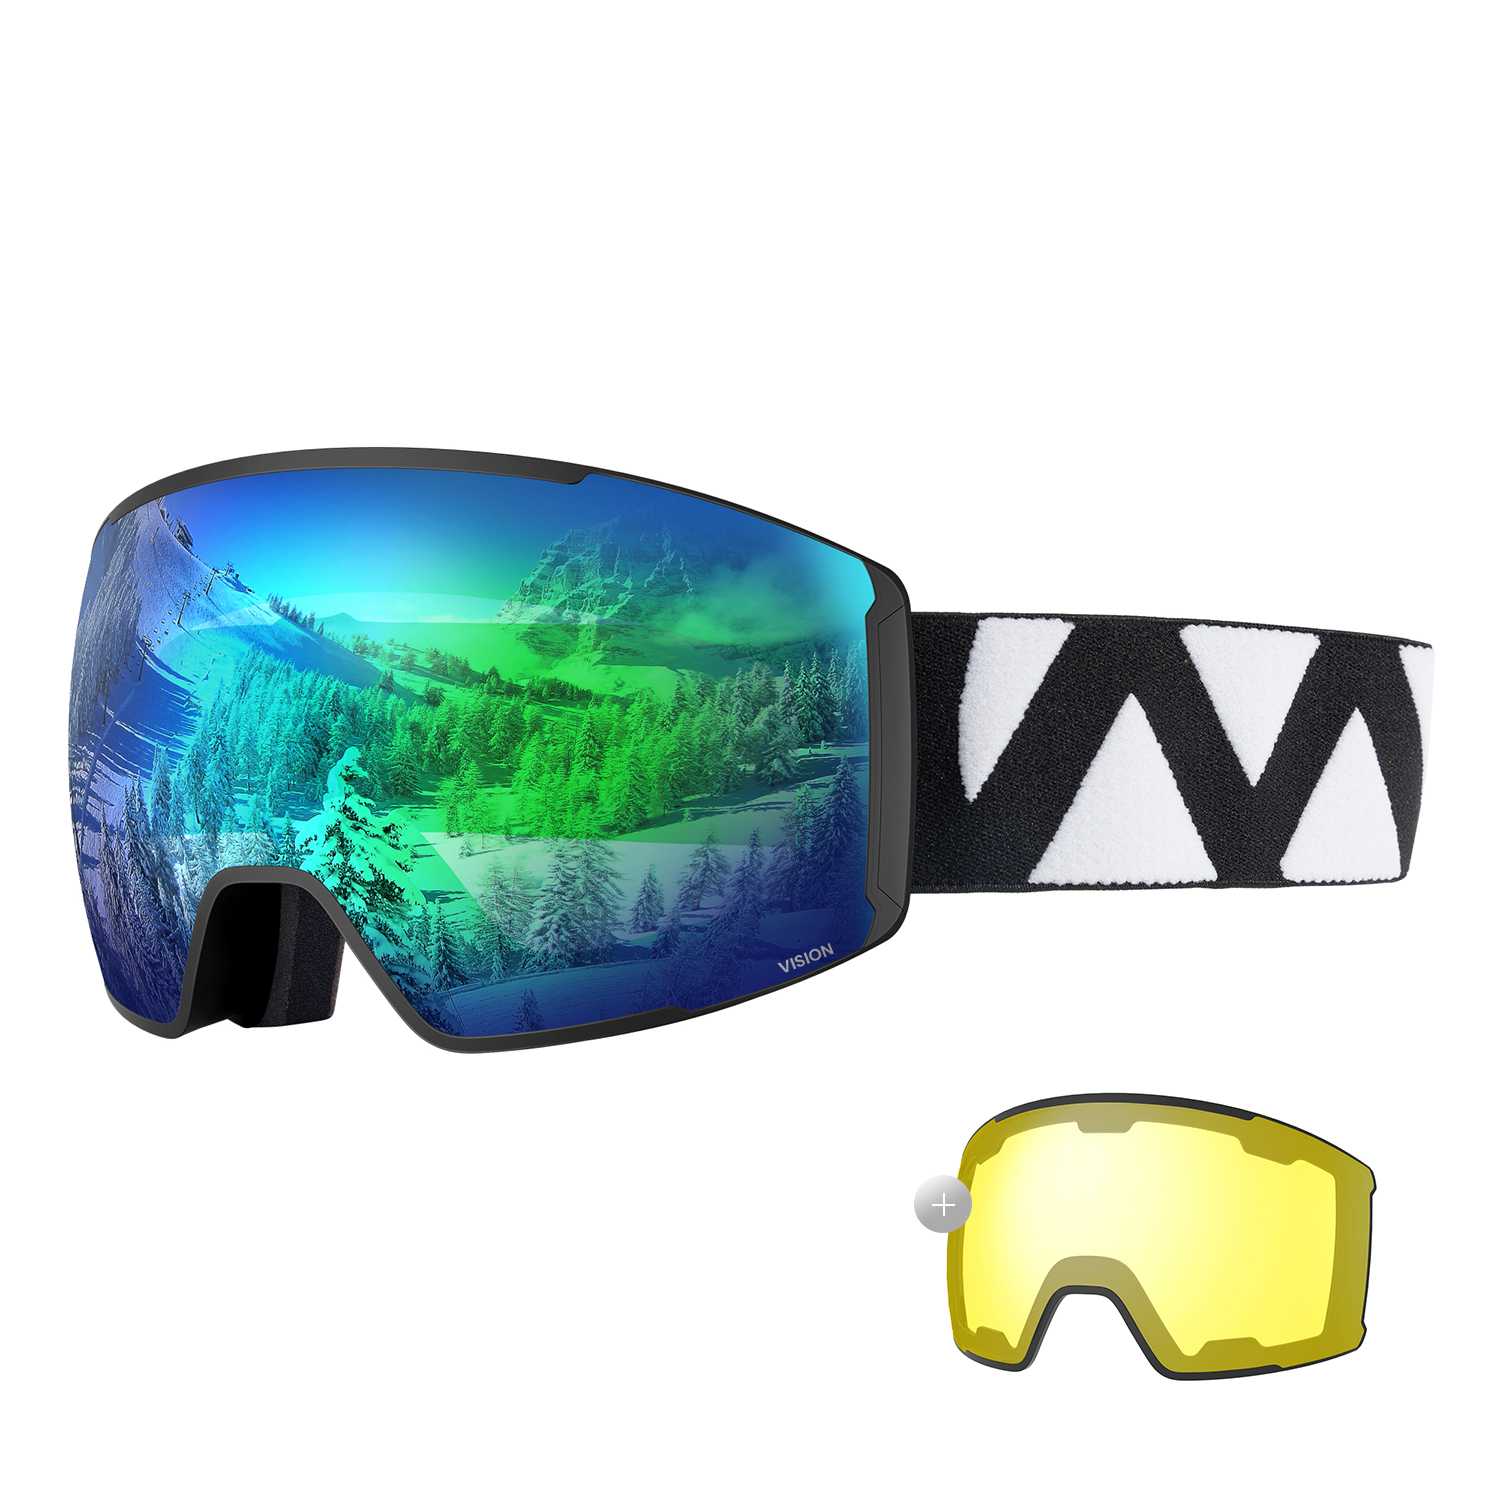 ski goggles for sun